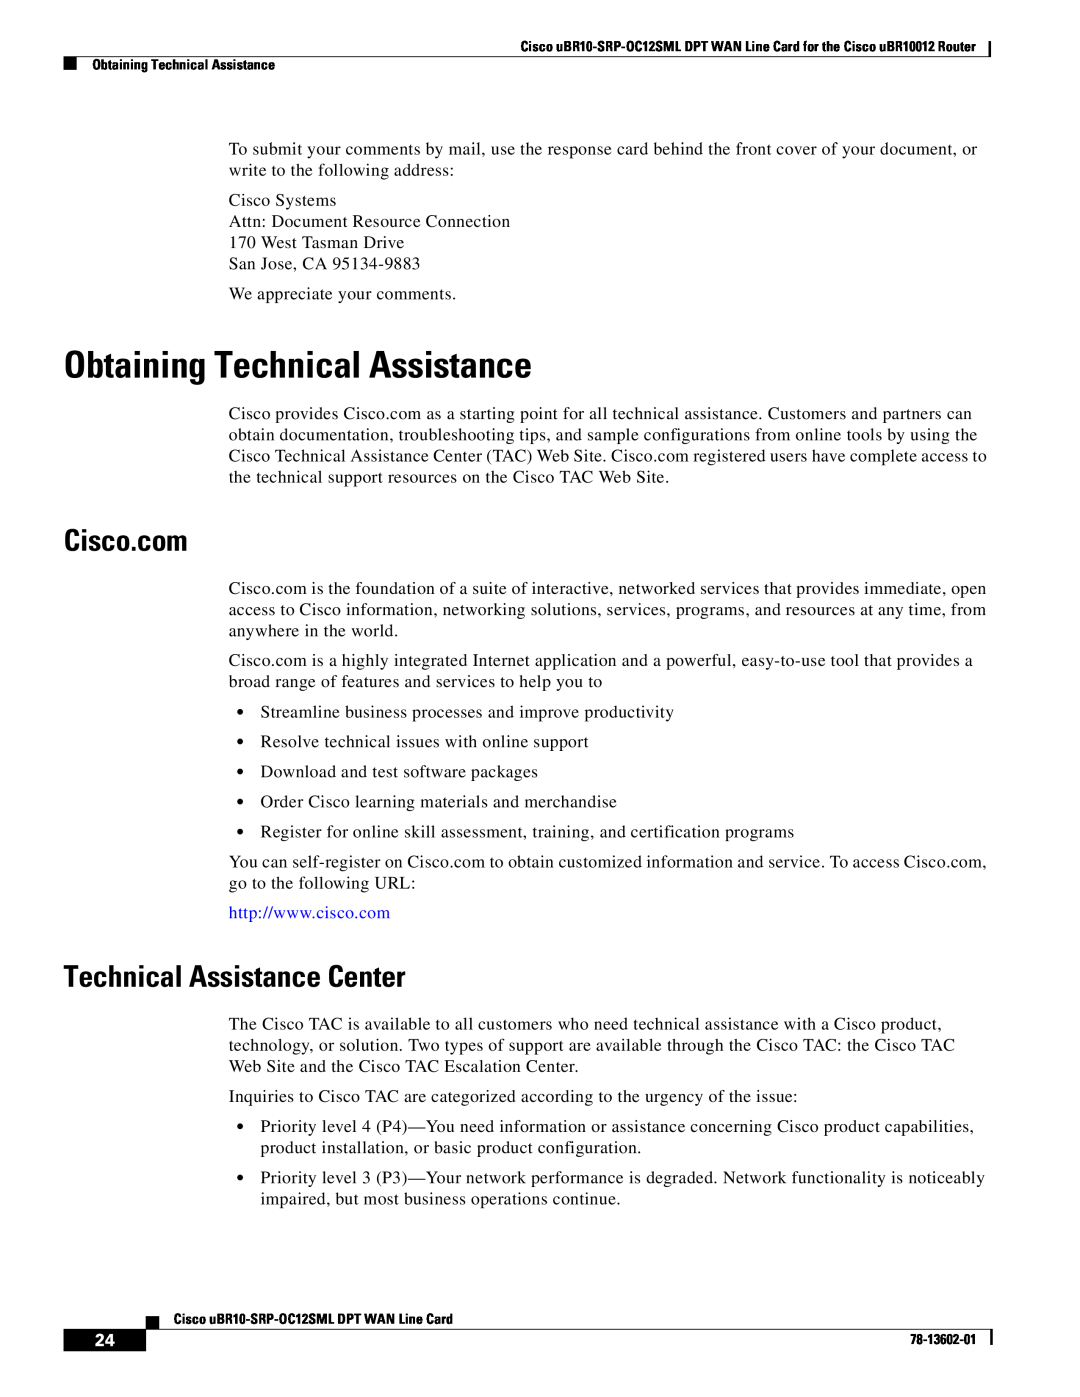 Cisco Systems uBR10-SRP-OC12SML Obtaining Technical Assistance, Cisco.com, Technical Assistance Center 